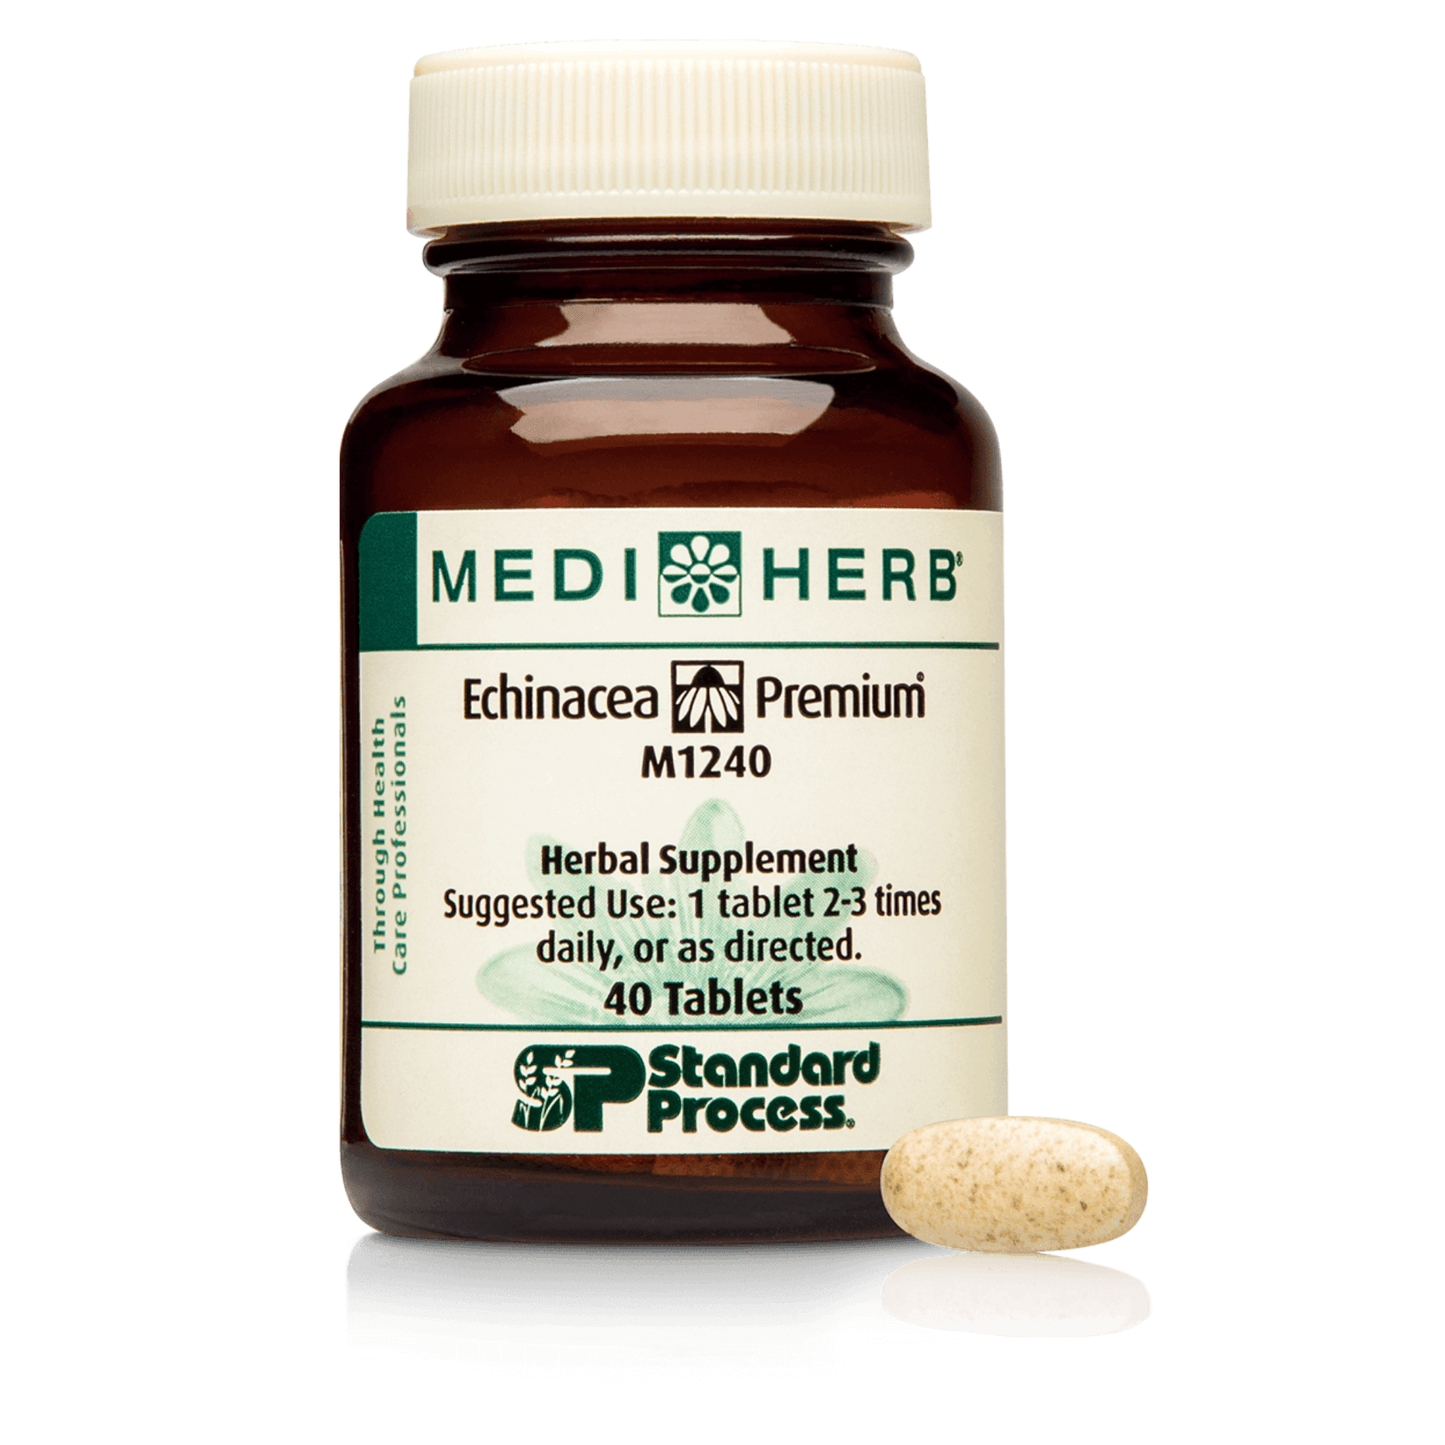 Primary Image of MediHerb Echinacea Premium (40 count)